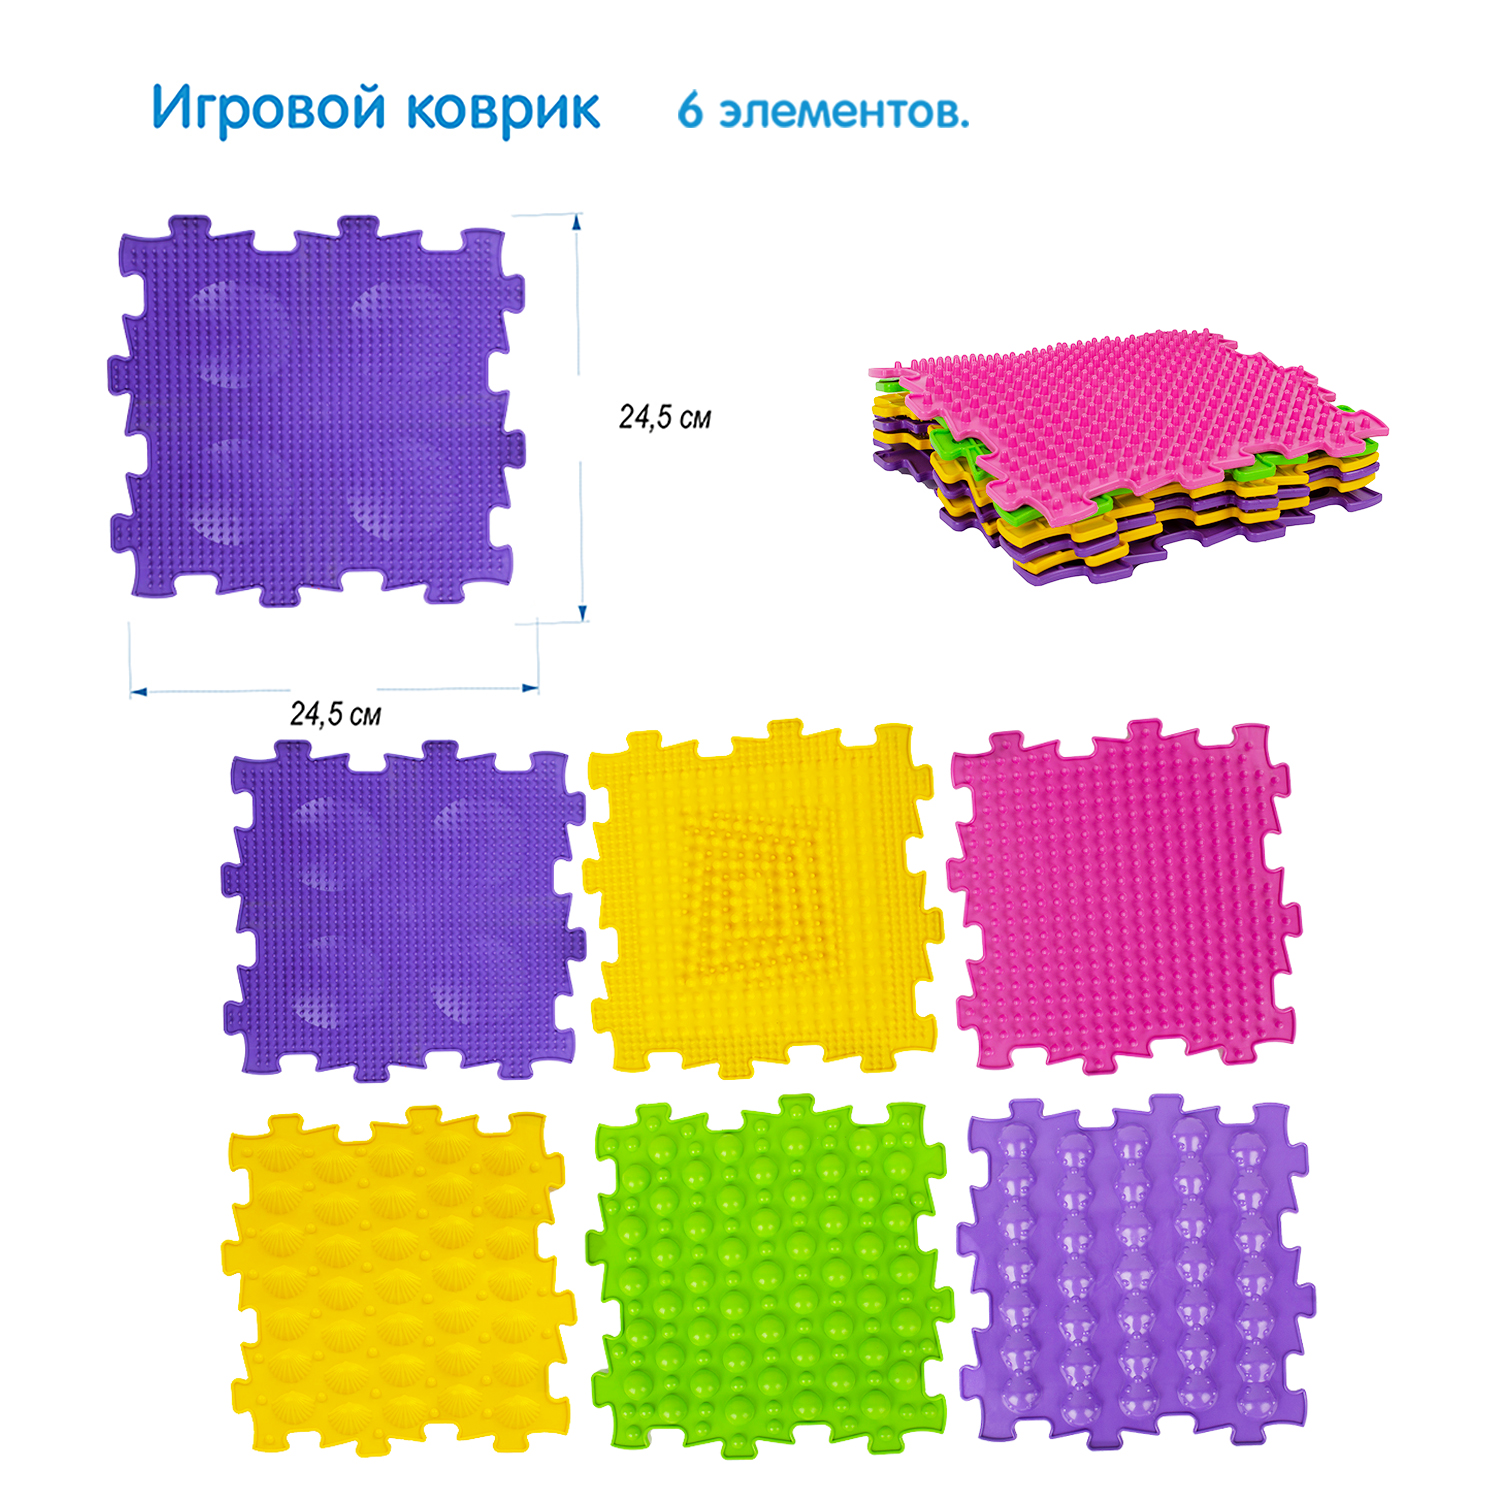 Игровой коврик СТРОМ модульный 6 элементов - фото 1